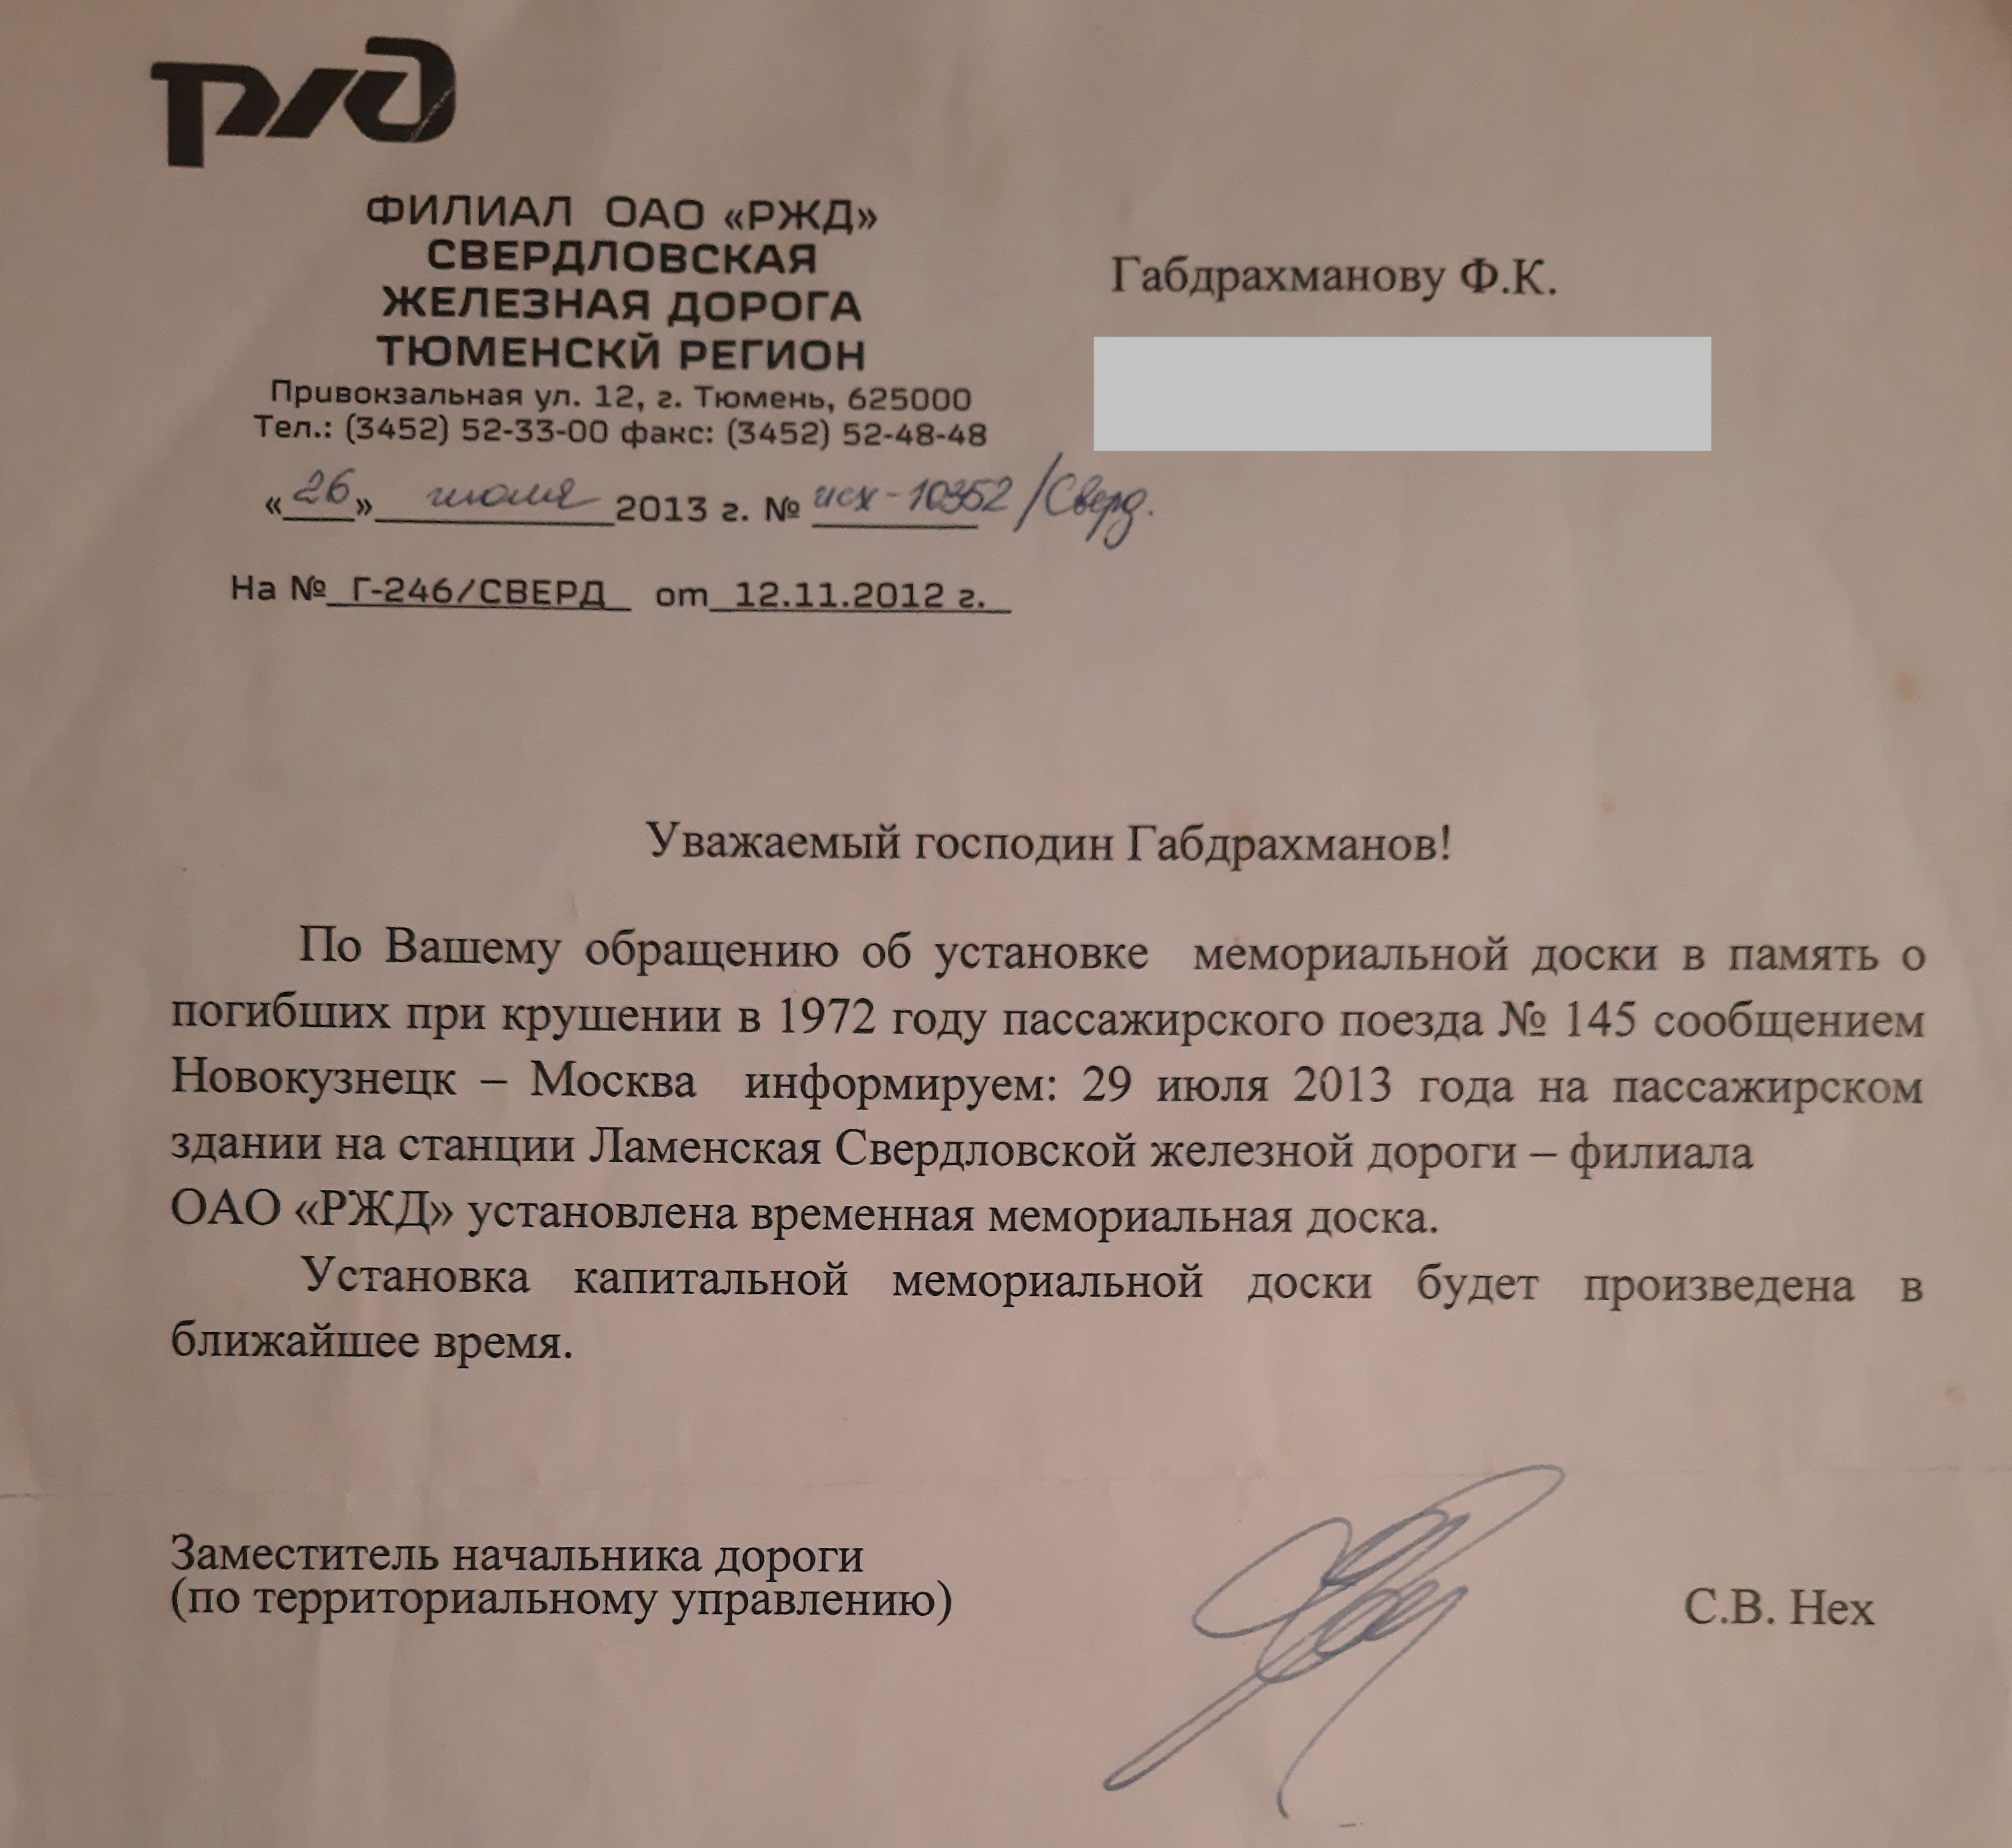 Документ подписан Сергеем Нехом, который когда-то был начальником тюменского отделения СвЖД, не так давно <a href="https://72.ru/text/gorod/69459759/" target="_blank" class="_">он умер</a>